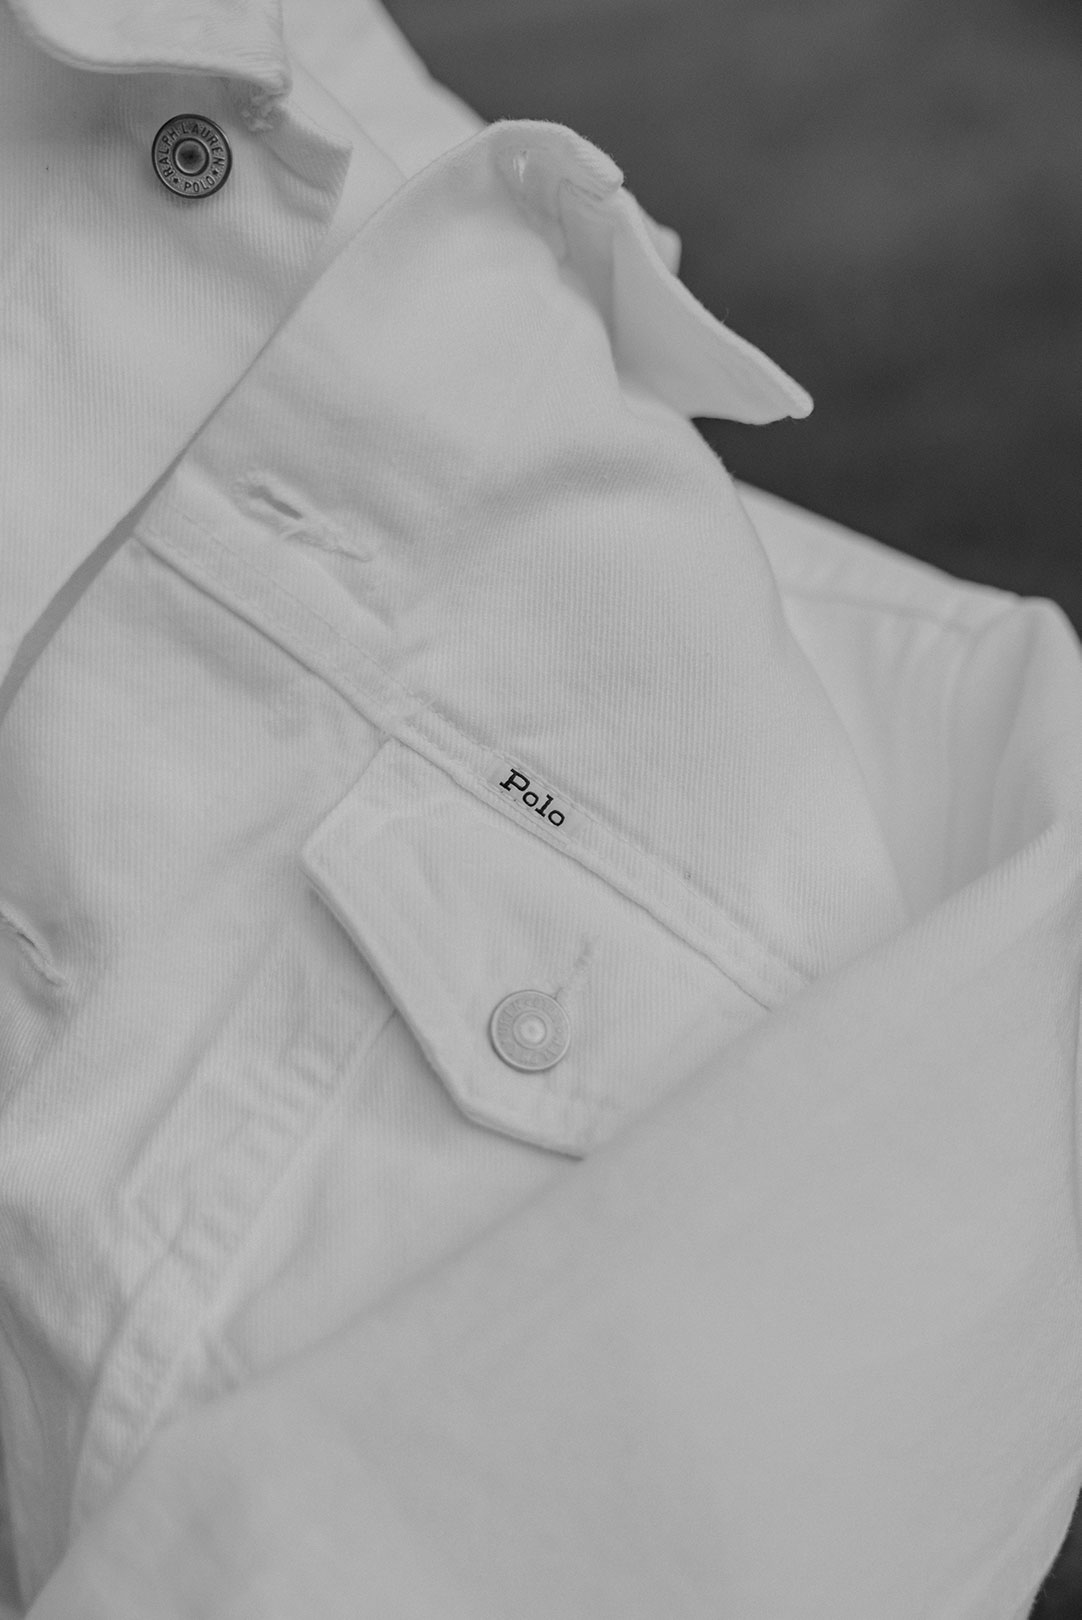 Polo Ralph Lauren Logo auf weißer Jeansjacke.